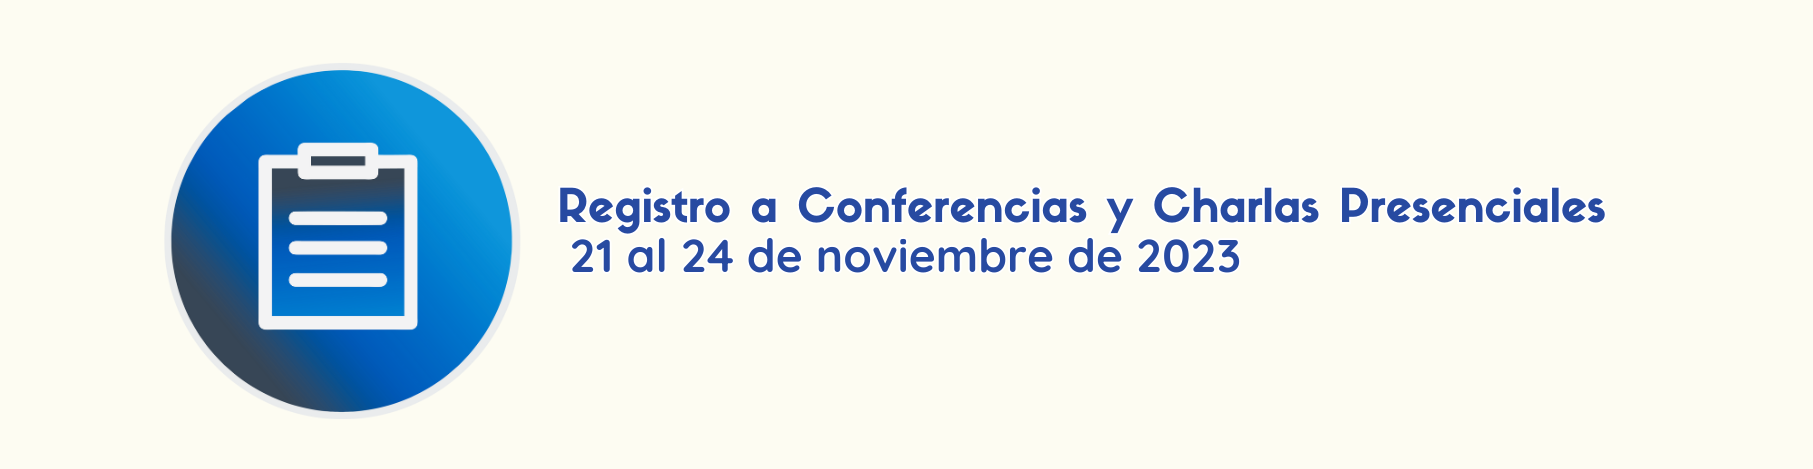 Imagen que vincula al Registros a Conferencias y Charlas Presenciales del 21 al 24 de noviembre de 2023